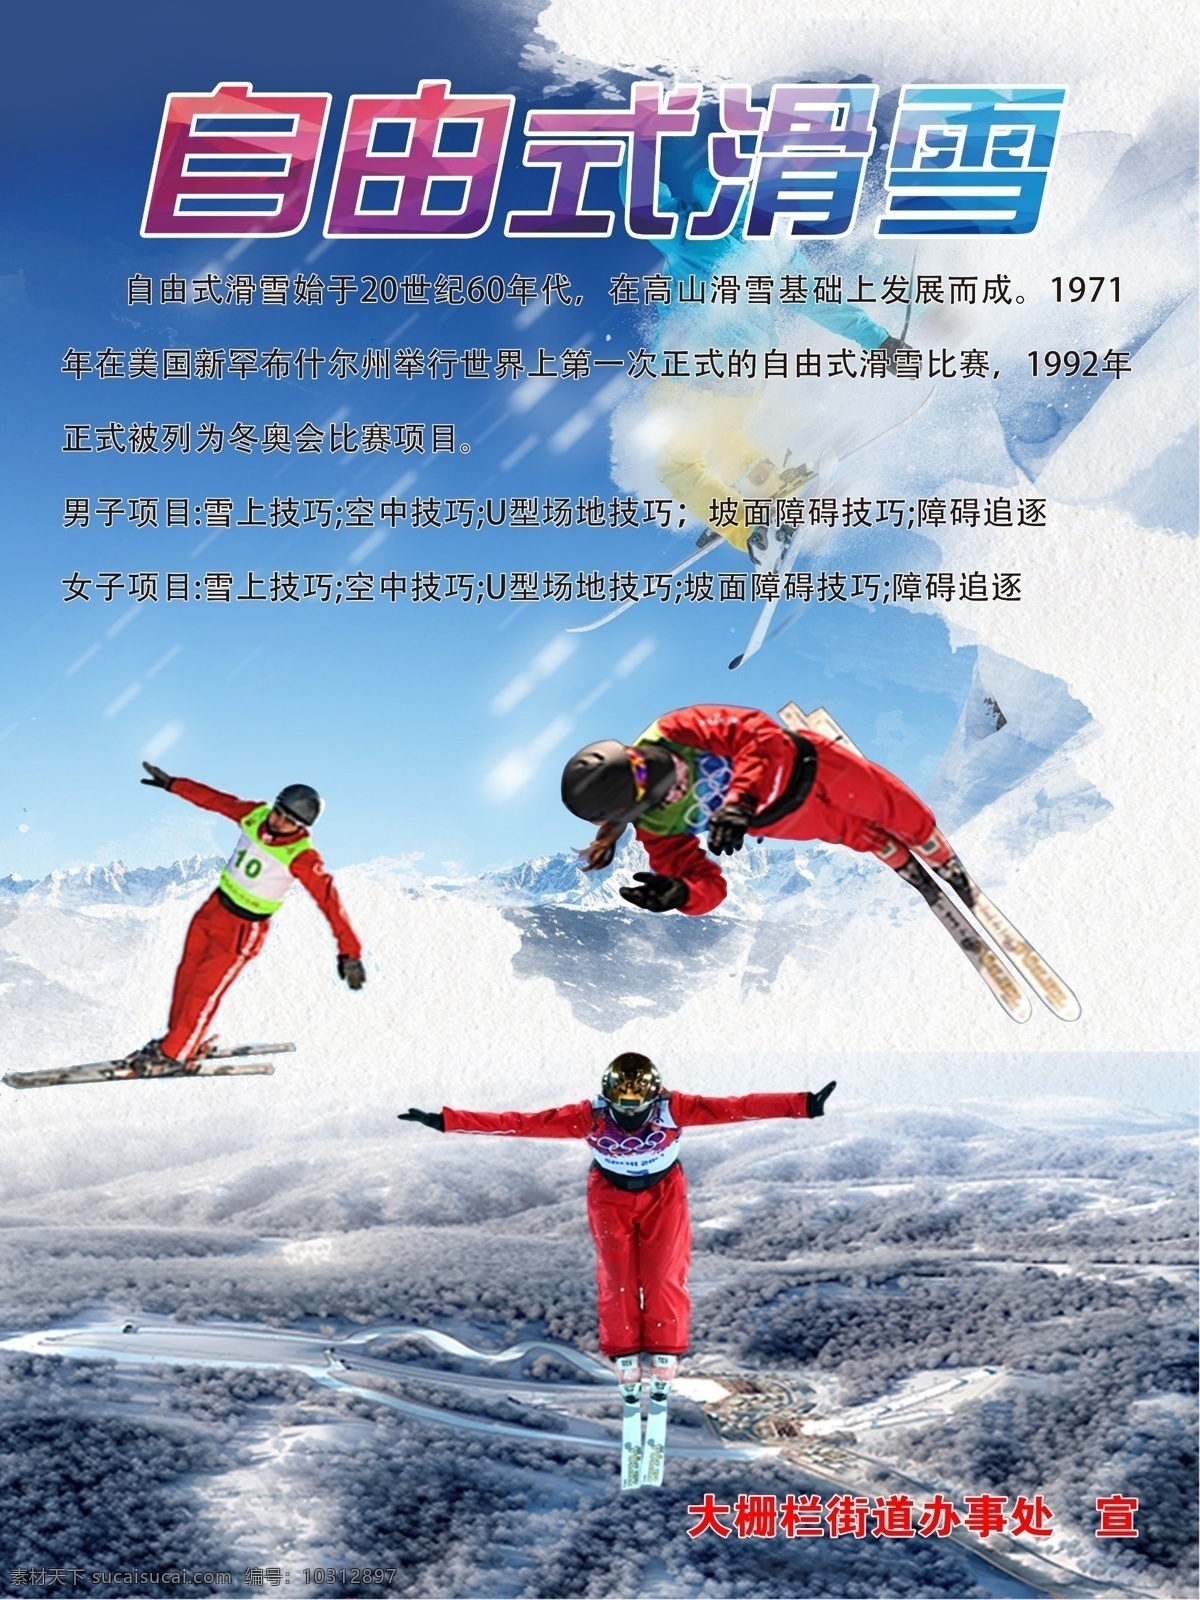 自由式滑雪 冬季滑雪 滑雪项目 滑雪 体育运动 体育项目